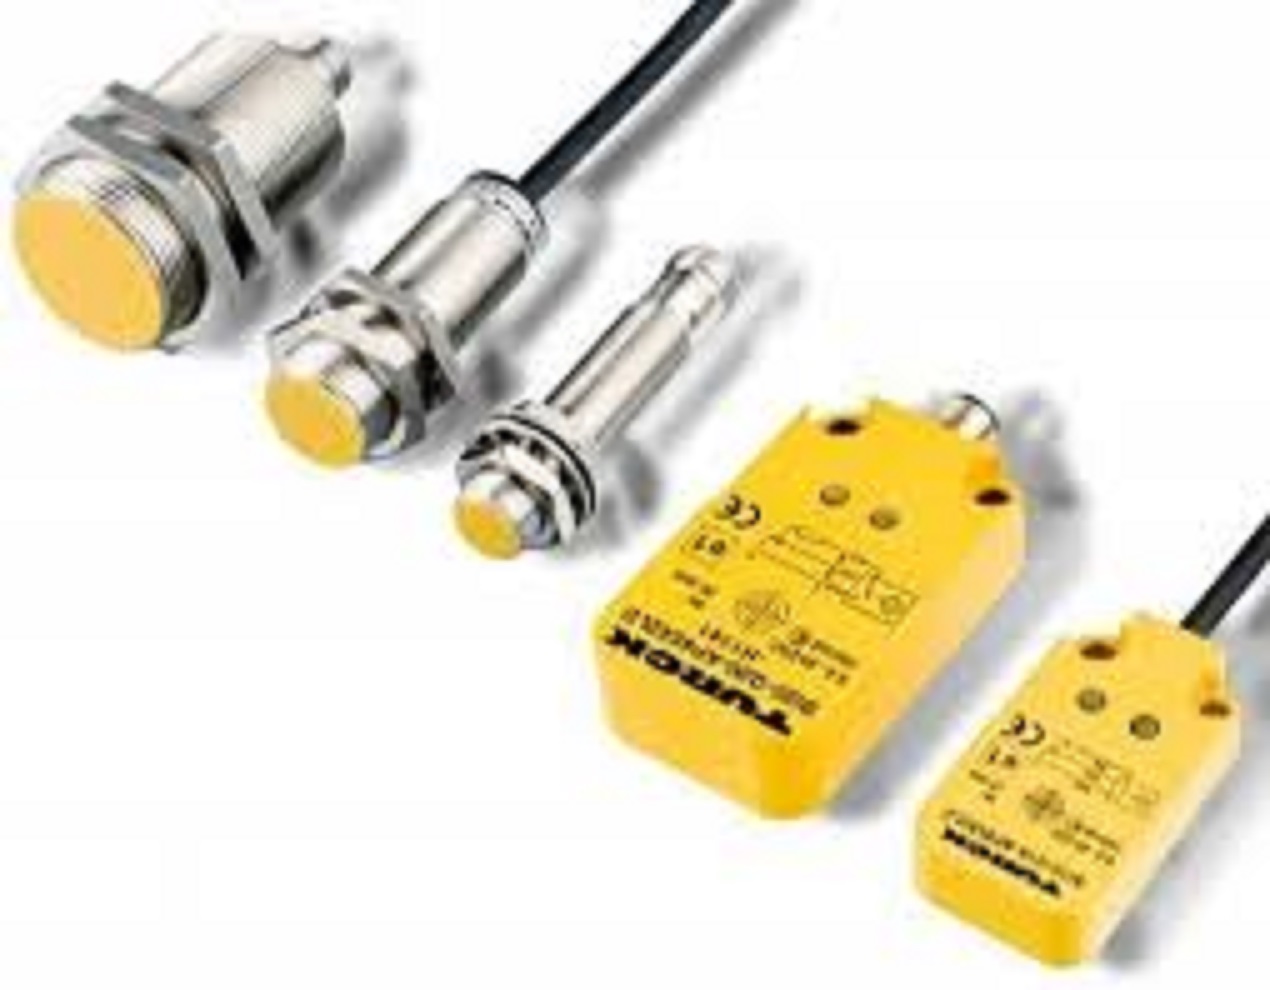 1pc Turck Bi10-m30-ap6x-h1141 Proximity Switch Sensor Fast for sale online 